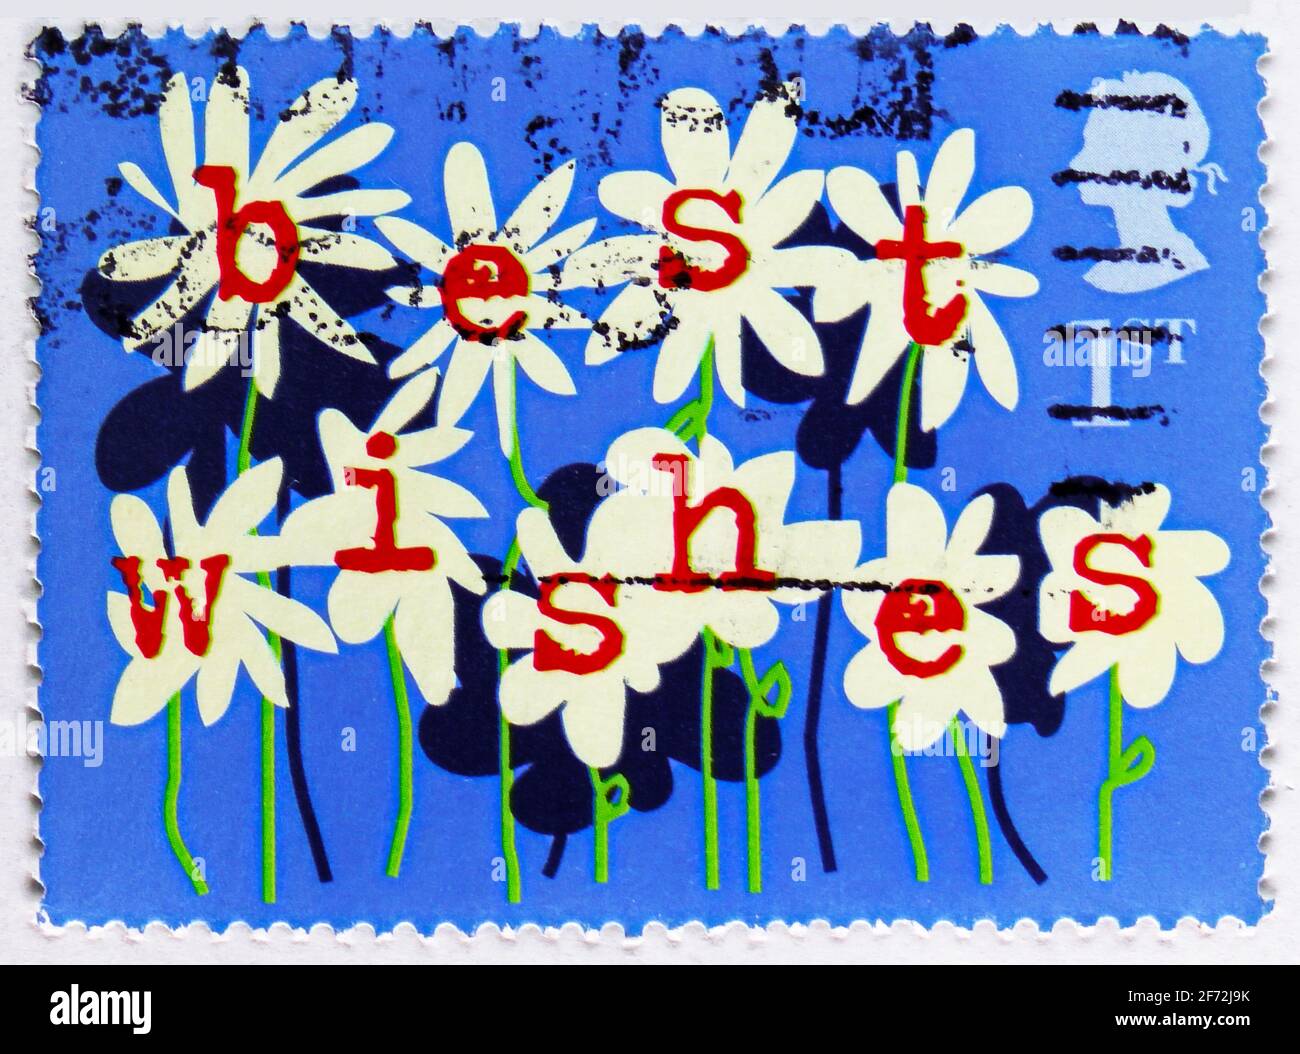 MOSCOU, RUSSIE - 22 DÉCEMBRE 2020: Timbre-poste imprimé au Royaume-Uni montre des fleurs (meilleurs voeux), timbres de voeux 2002 - série occasions, circ Banque D'Images